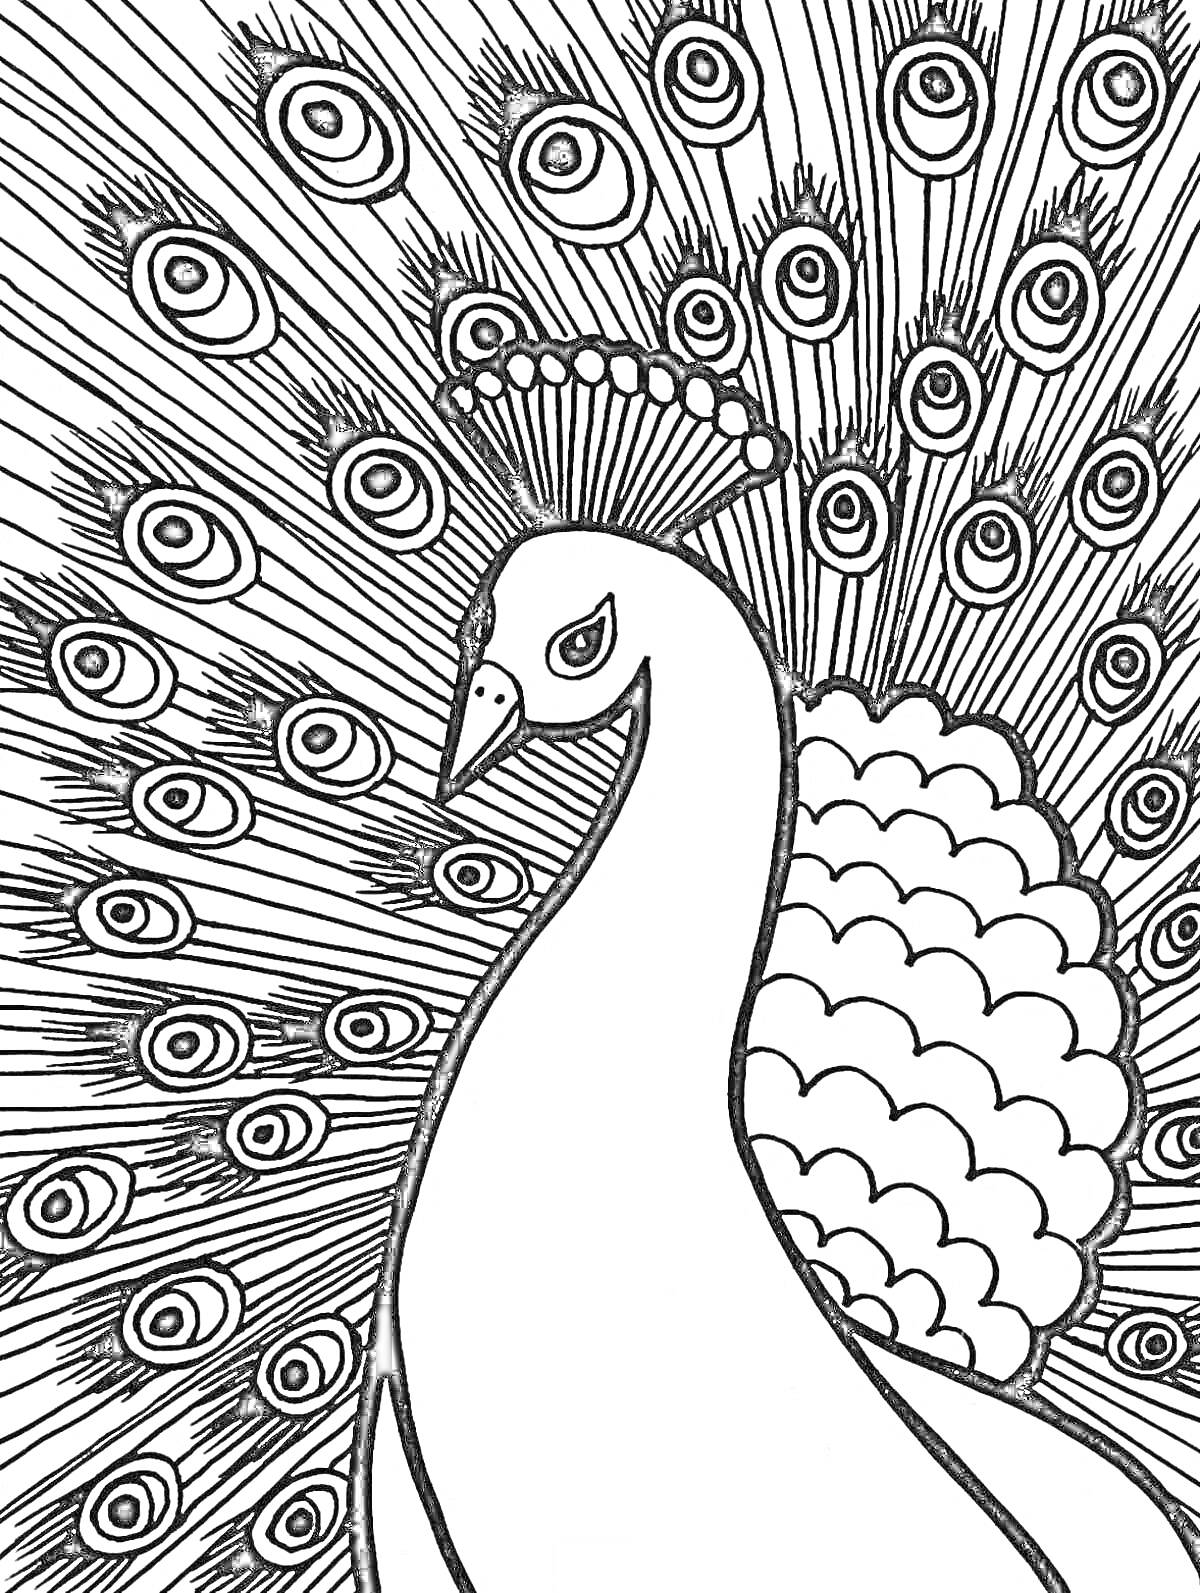 Раскраска Павлин с распущенным хвостом, голова павлина украшена хохолком, хвост с характерным узором из 